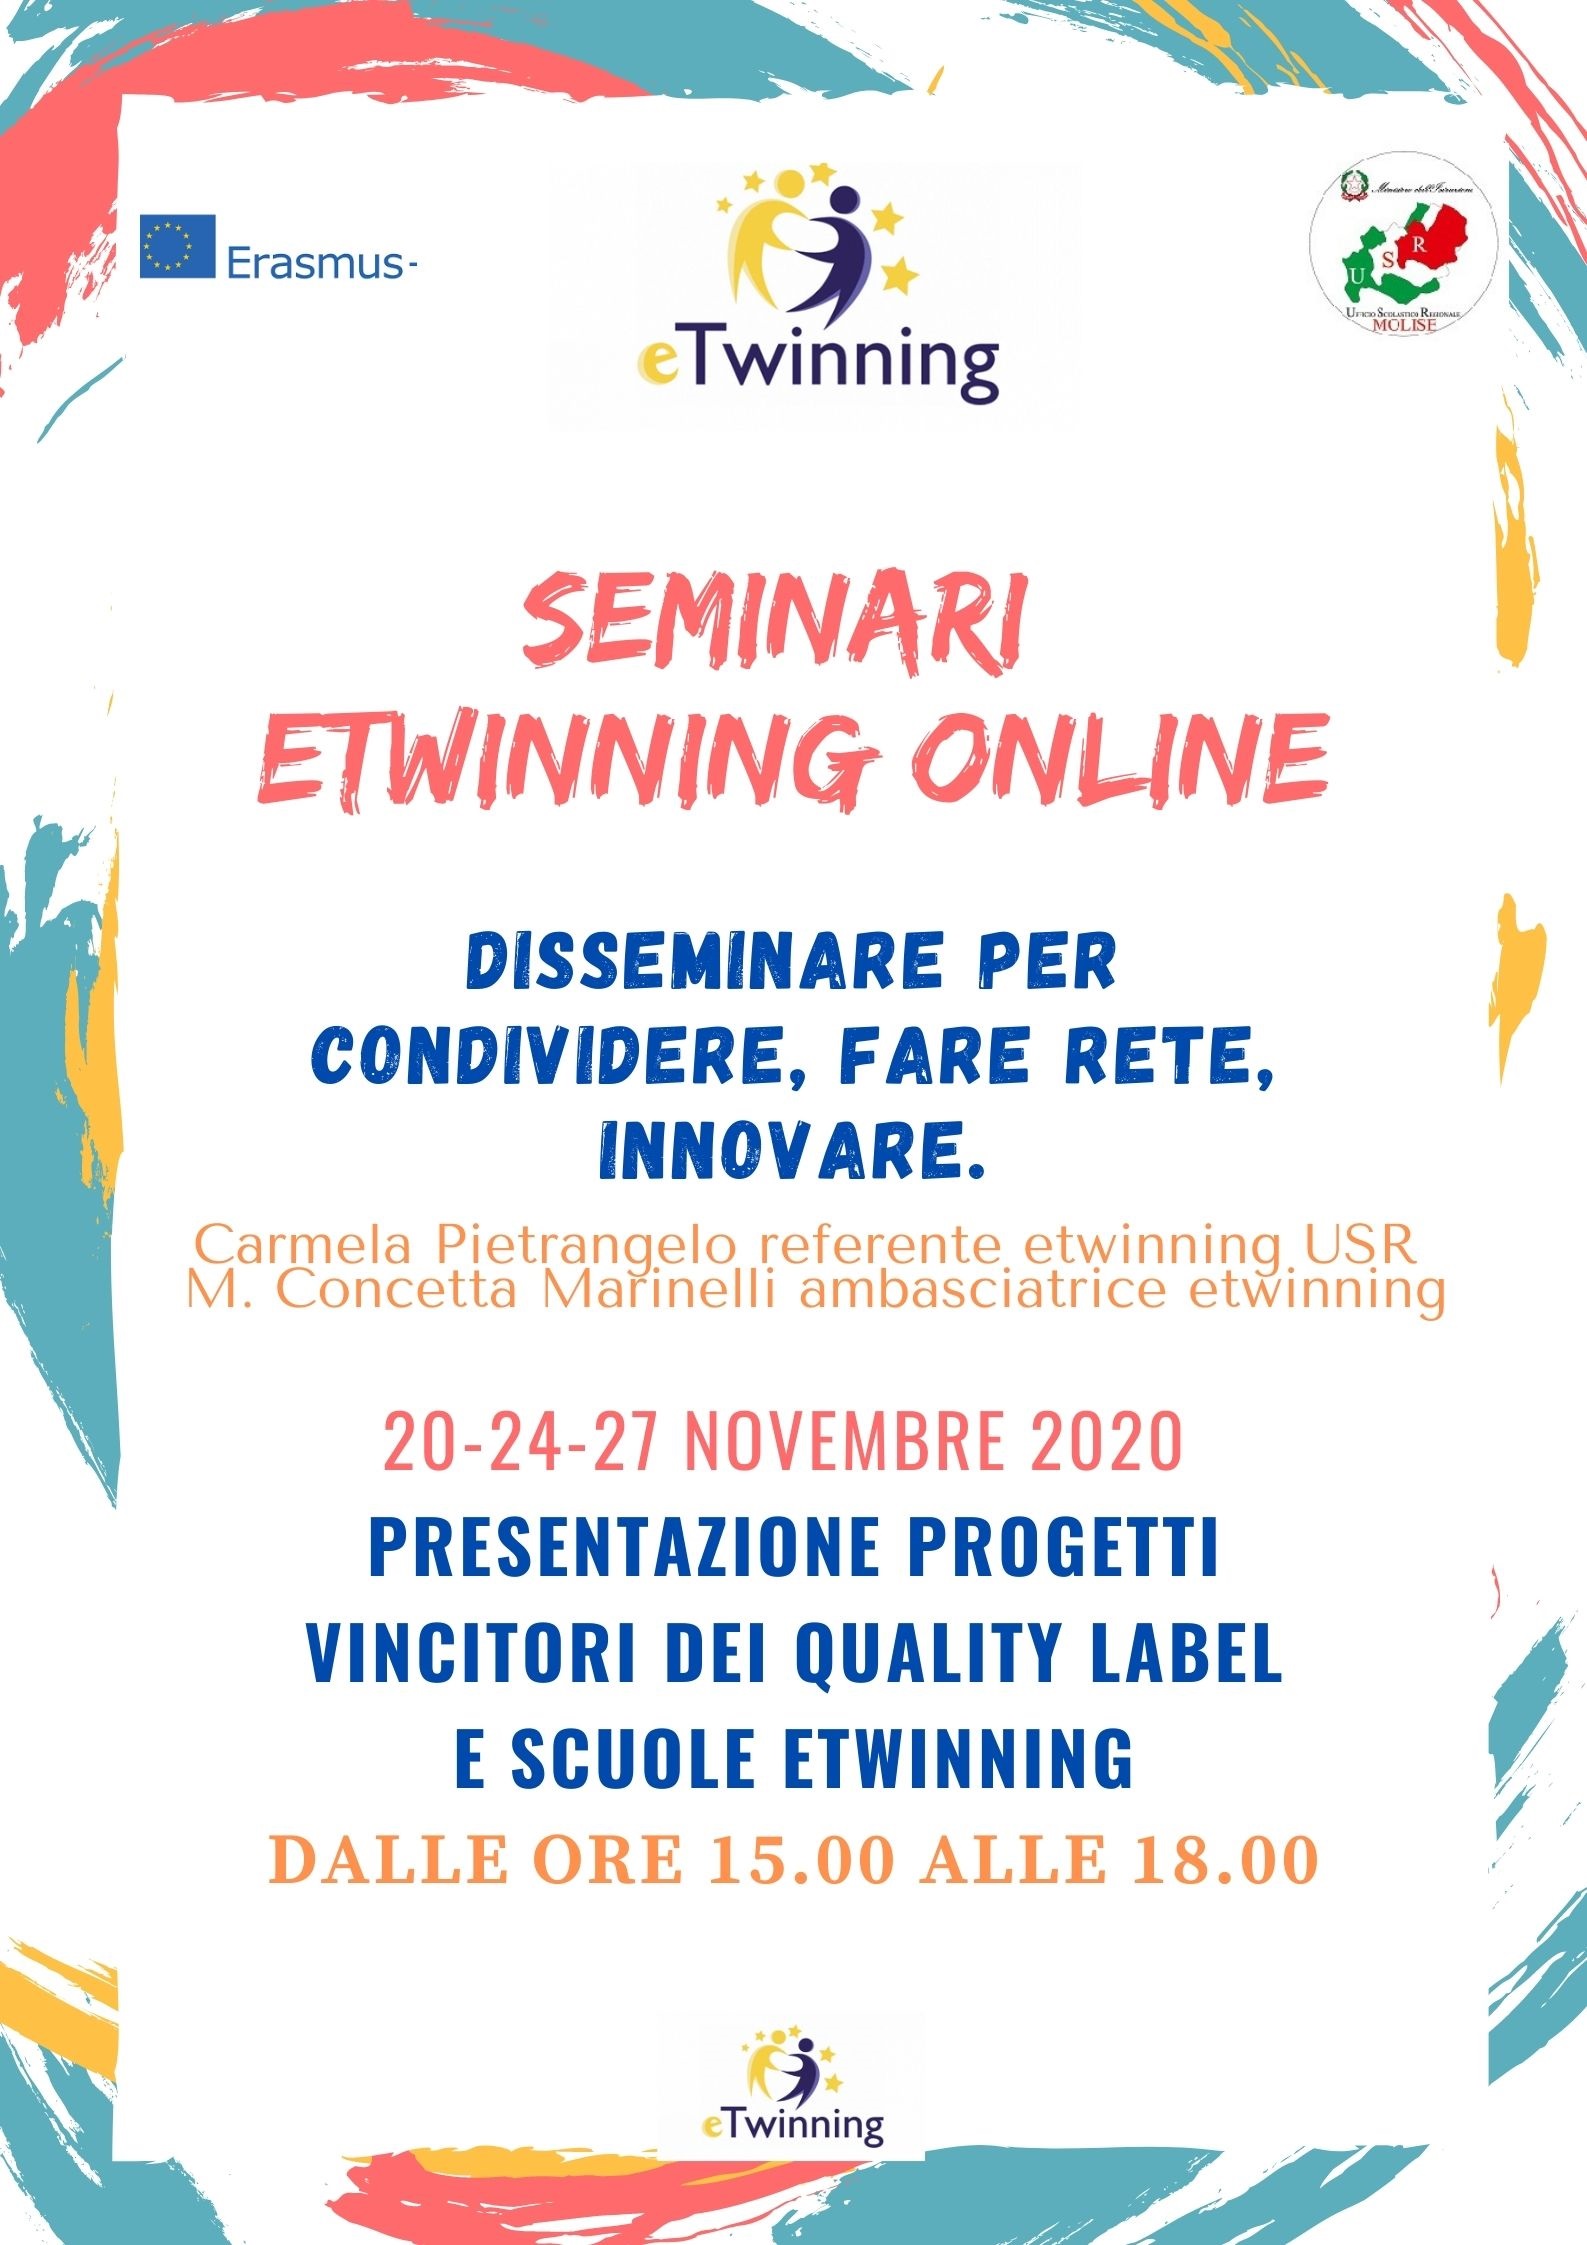 Al momento stai visualizzando Seminari E-Twinning online